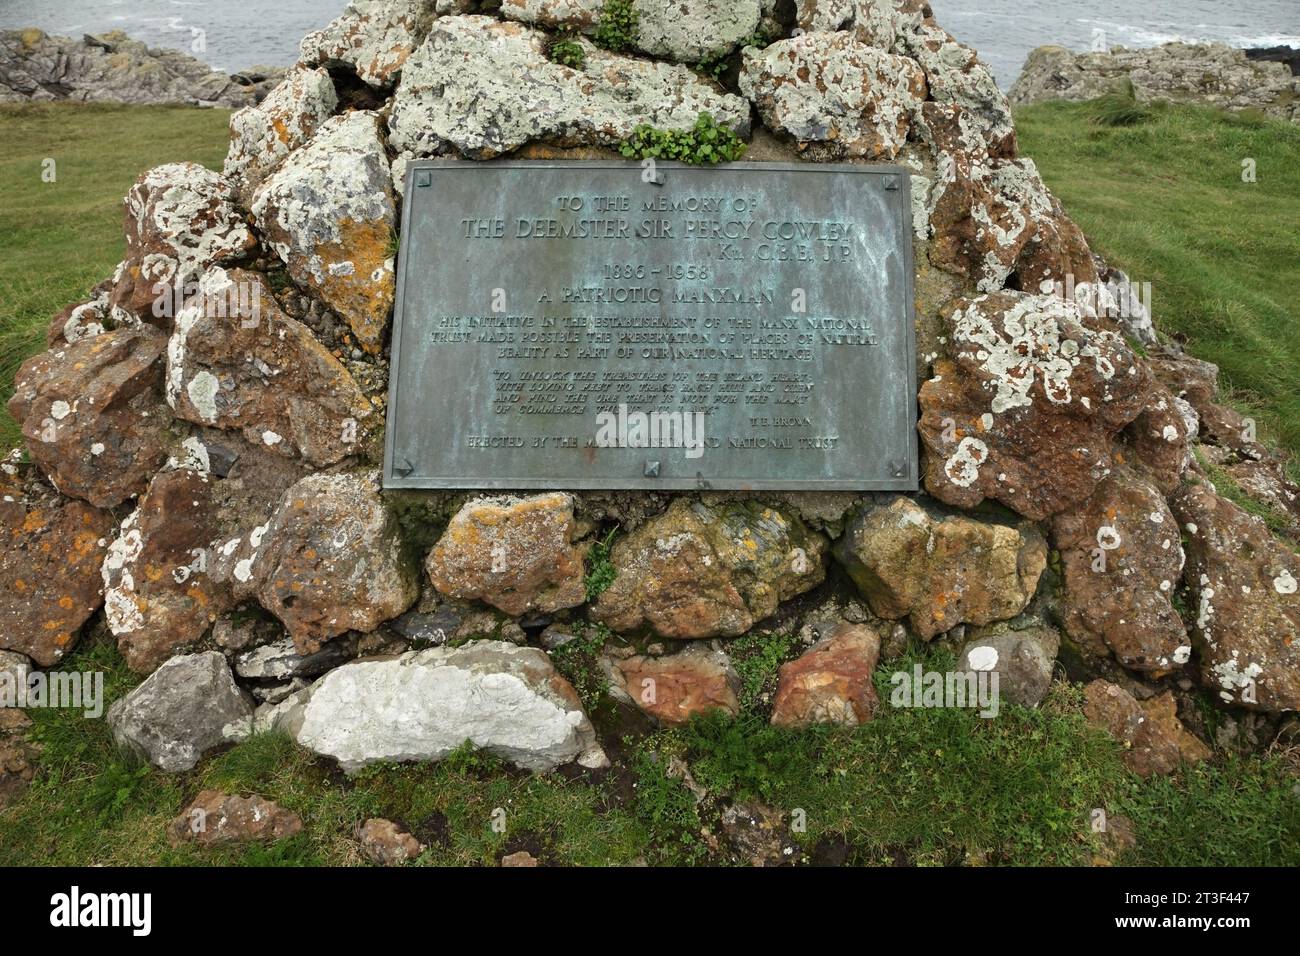 Targa in memoria del conservatore Sir Percy Cowley, Rushen, Isola di Man. Foto Stock